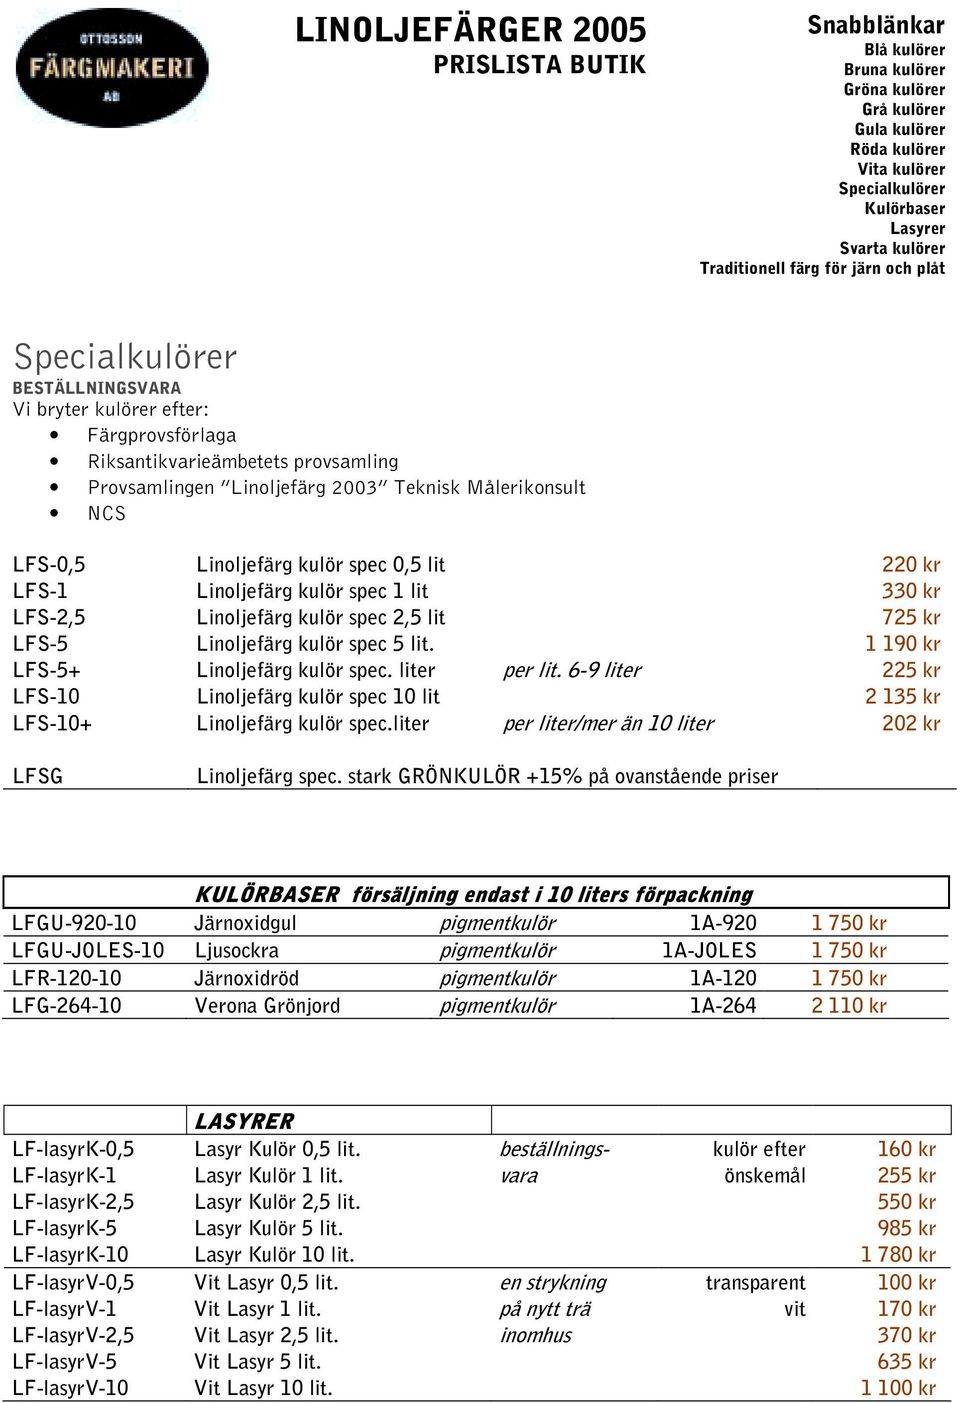 6-9 liter 225 kr LFS-10 Linoljefärg kulör spec 10 lit 2 135 kr LFS-10+ Linoljefärg kulör spec.liter per liter/mer än 10 liter 202 kr LFSG Linoljefärg spec.